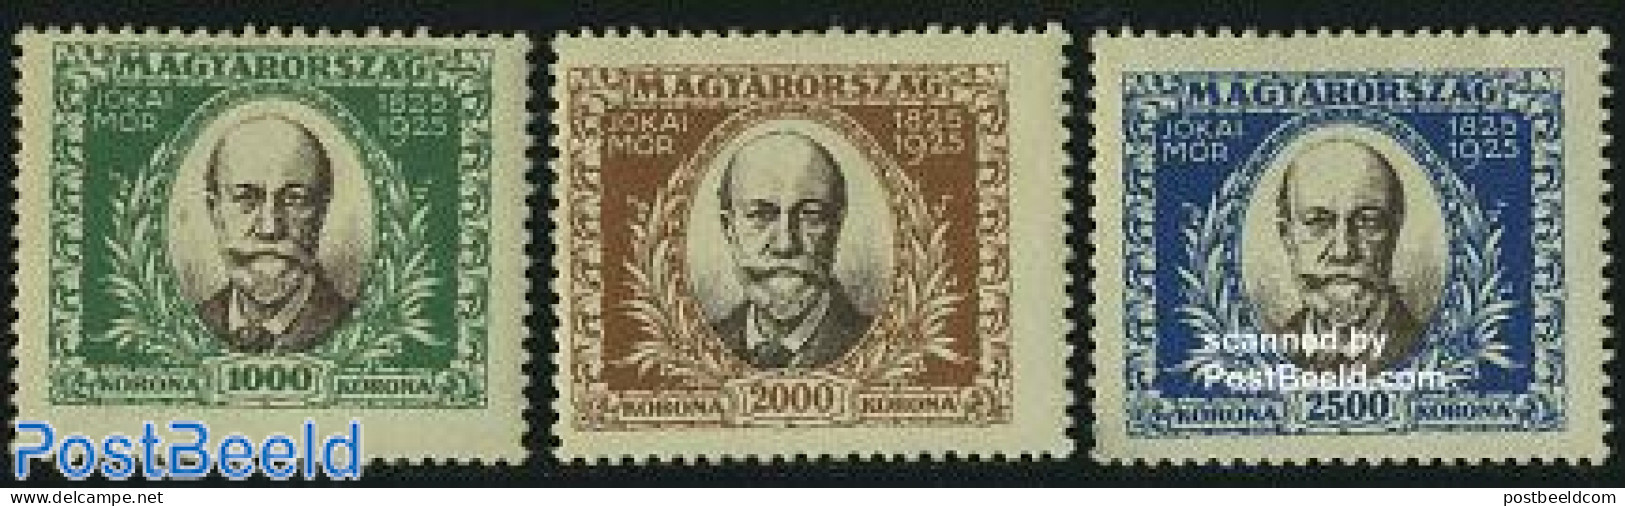 Hungary 1925 M. Jokais Birth Centenary 3v, Unused (hinged), Art - Authors - Nuovi